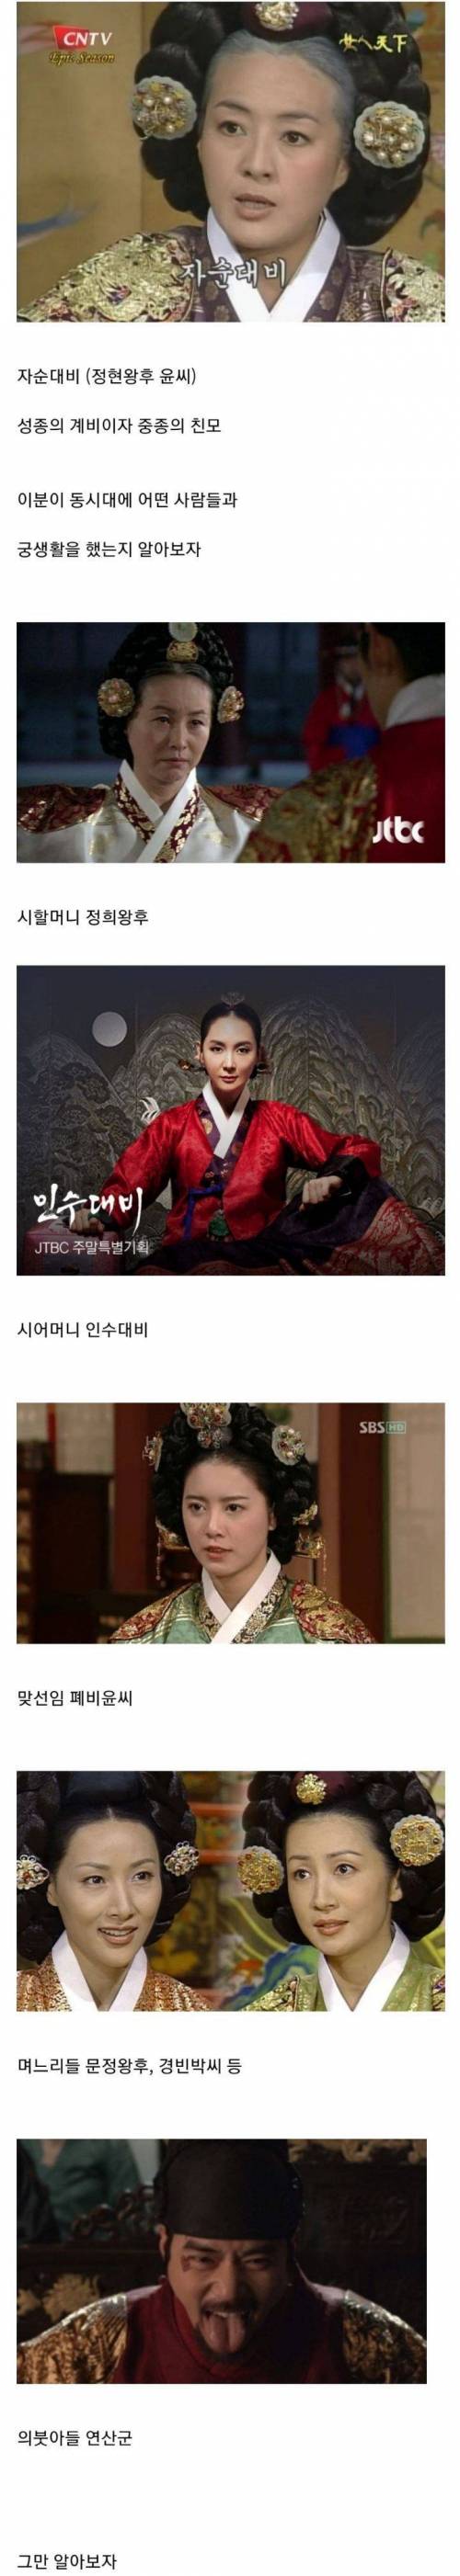 궁생활 난이도 역대급이었던 조선의 왕비.jpg